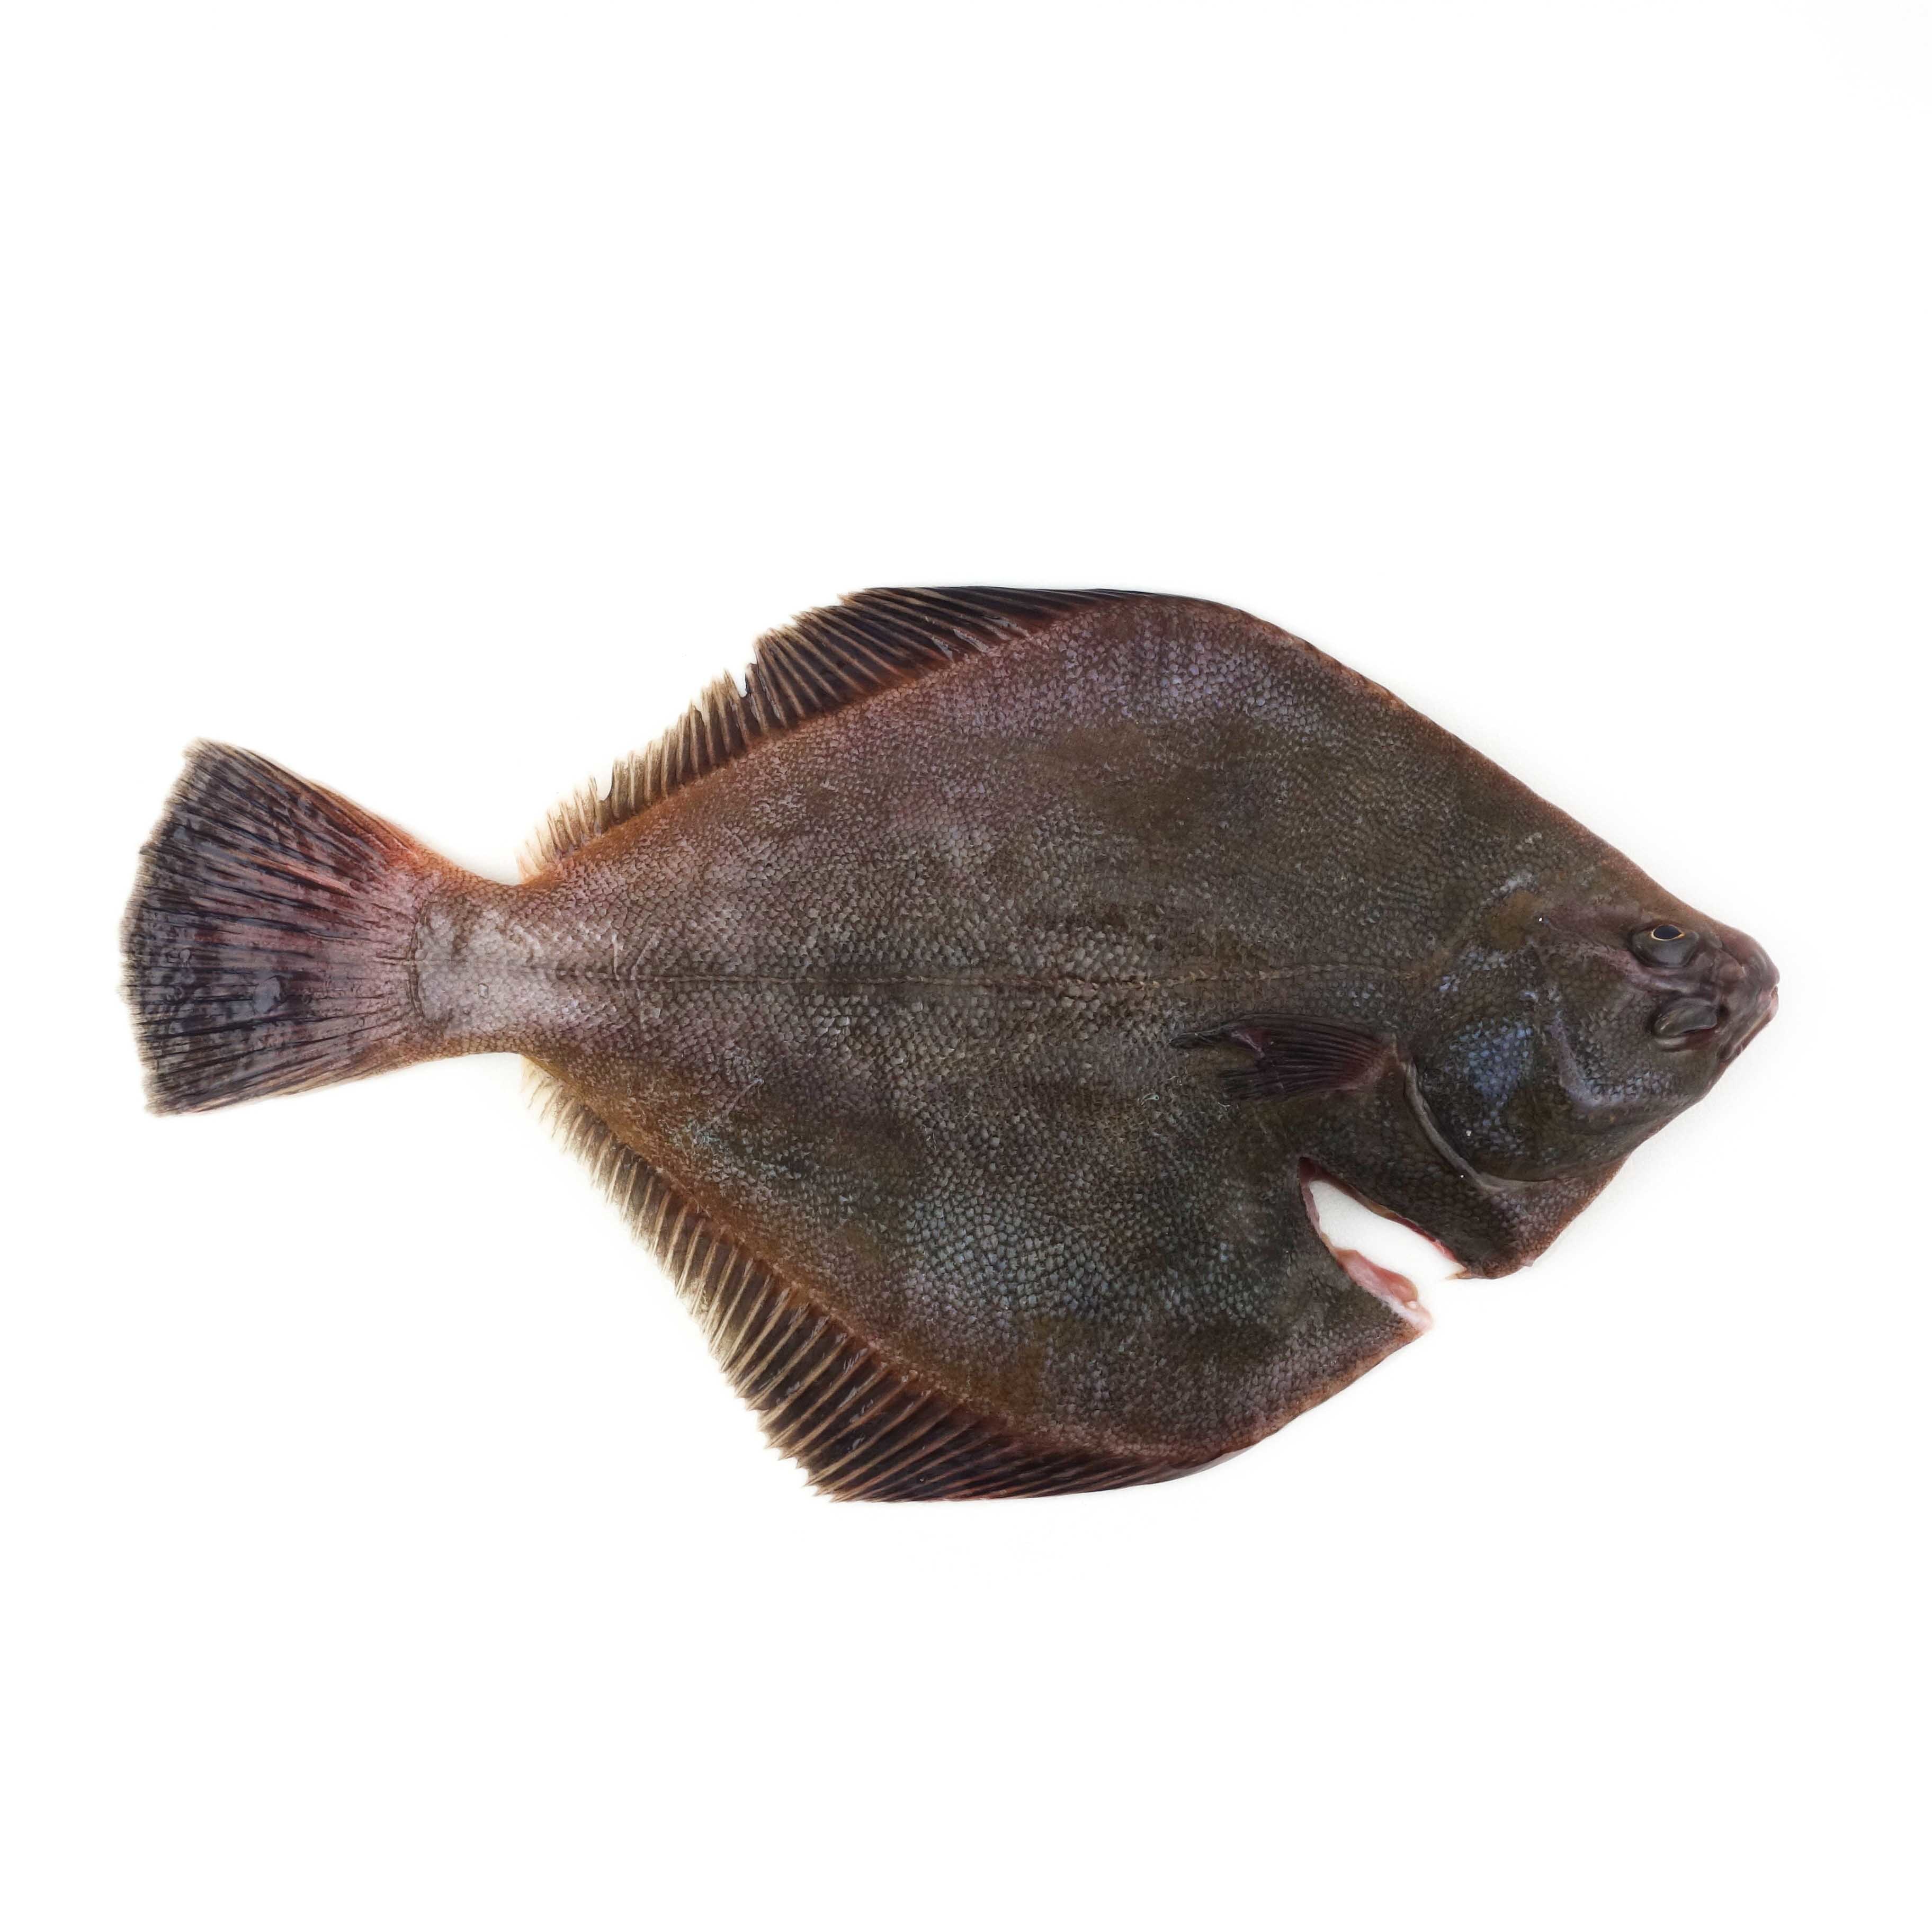 急凍紐西蘭比目魚(Flounder) - 已去鰓及內臟 